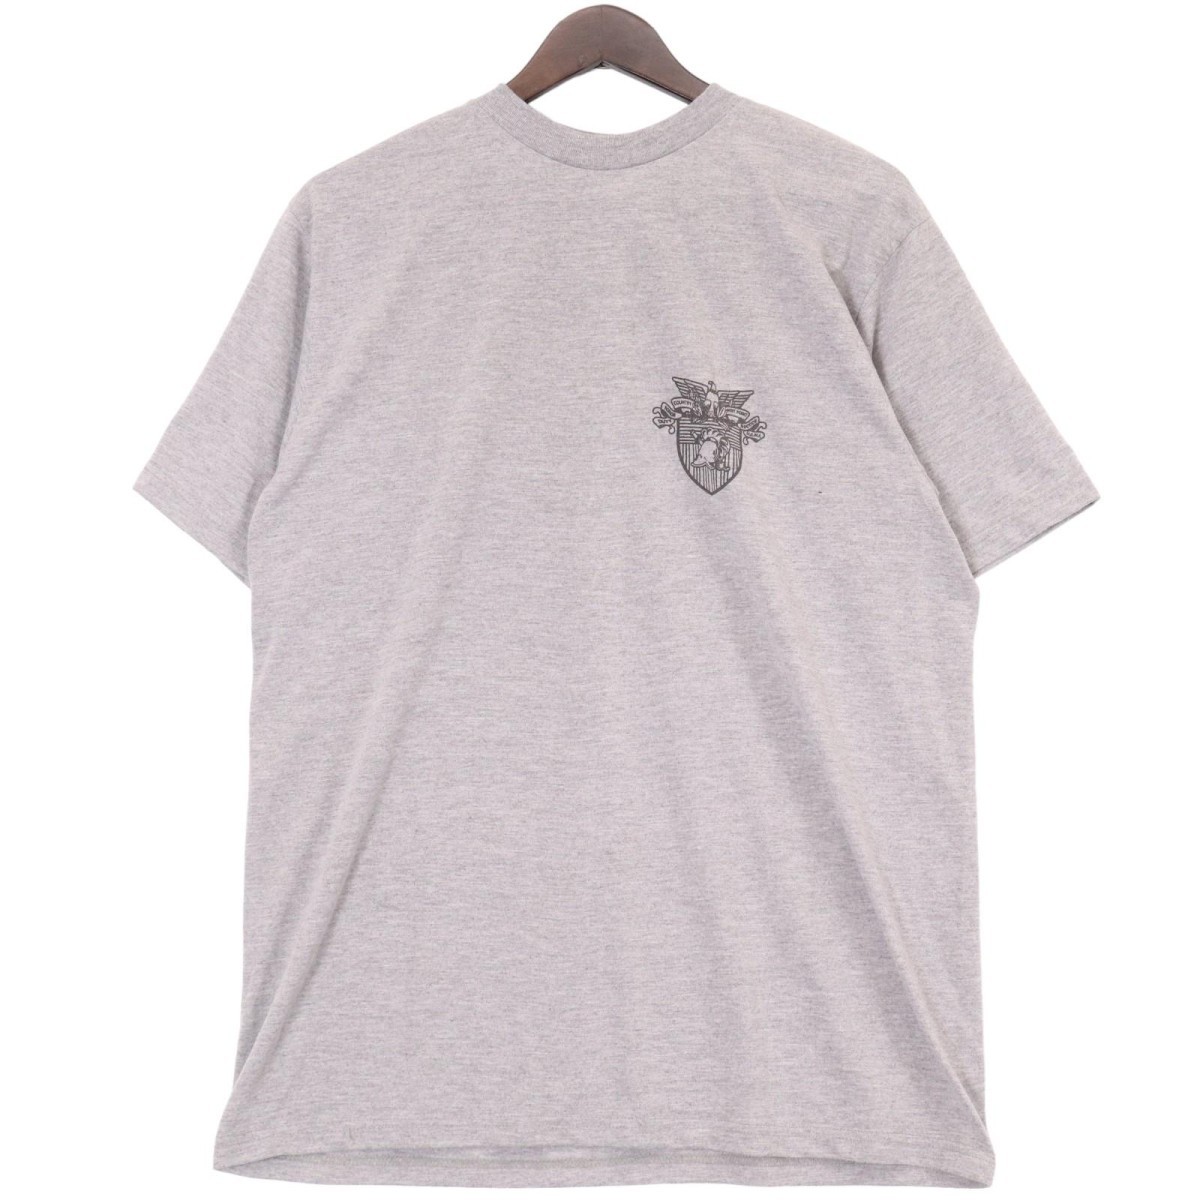 West Point / T-shirts ウエストポイント Tシャツ 半袖 カットソー 表記サイズMの画像1